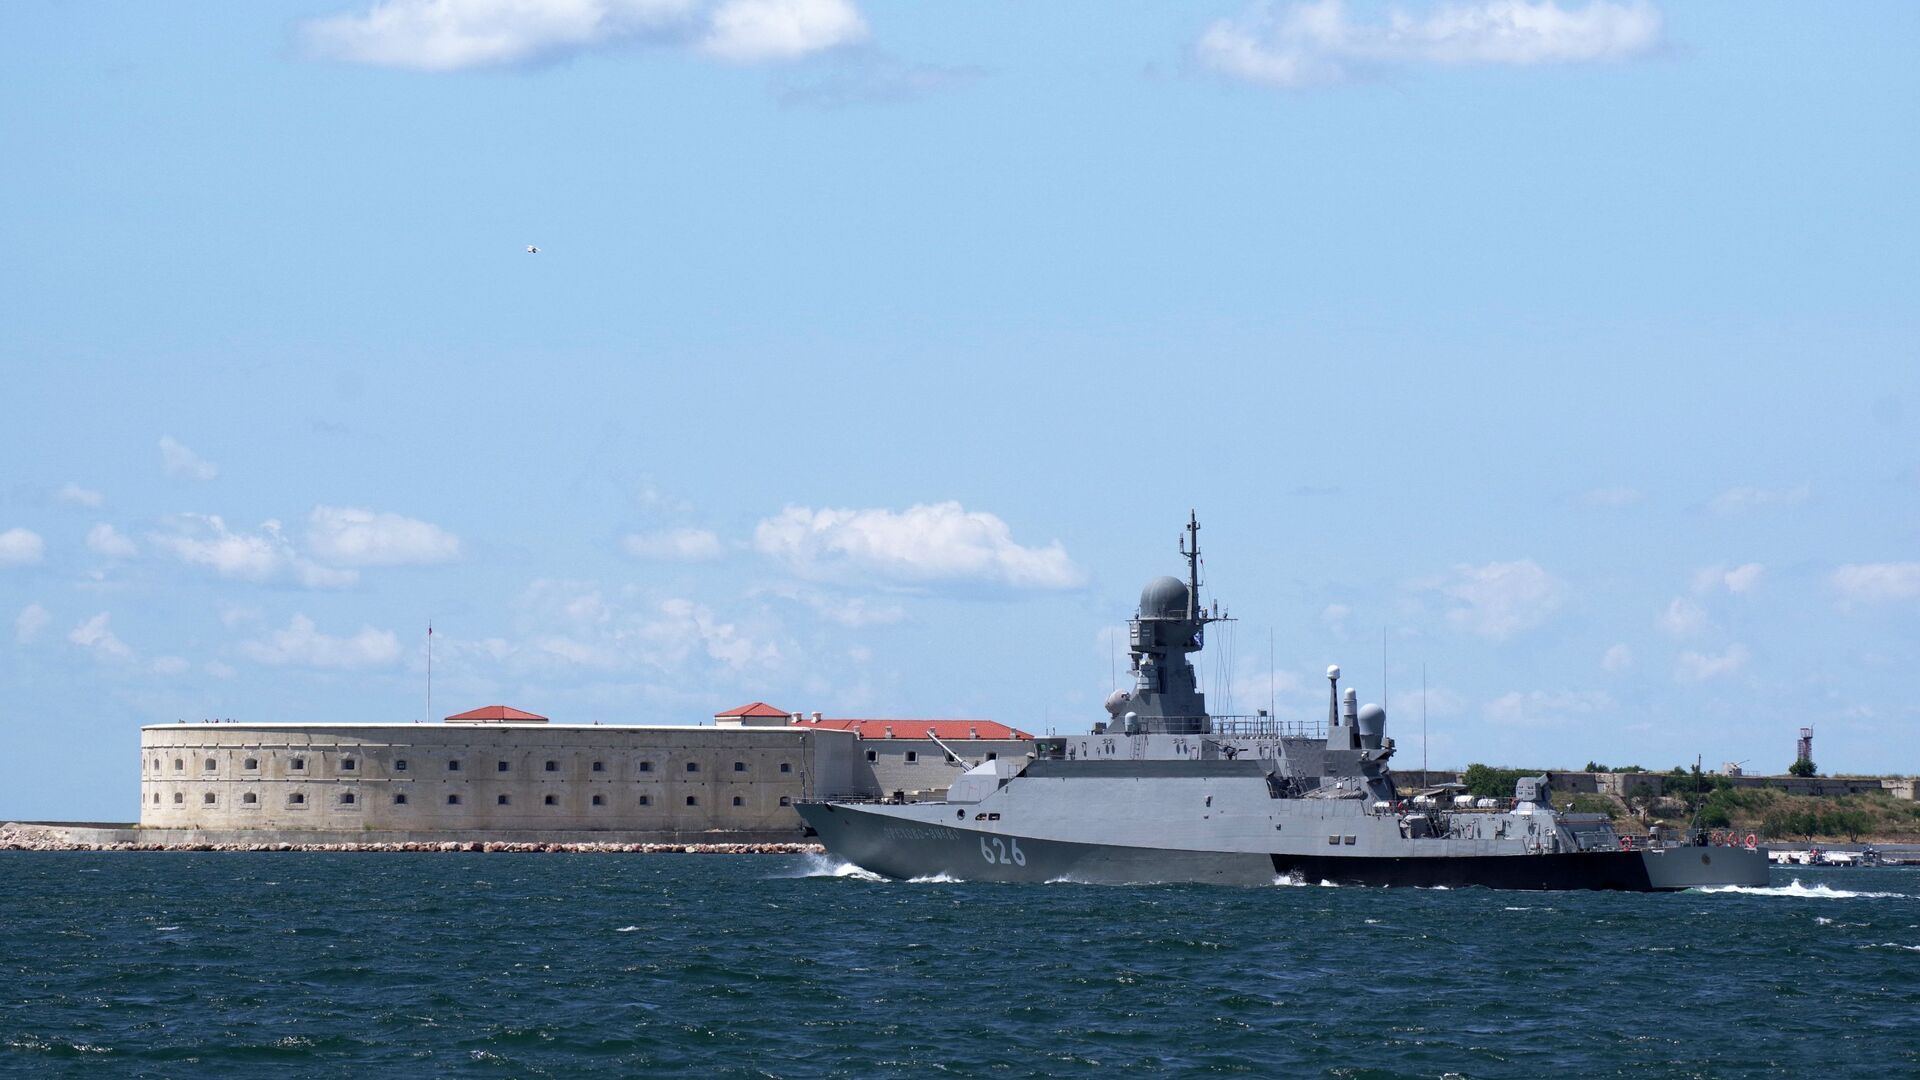 Tàu tên lửa nhỏ Orekhovo-Zuevo của Hạm đội Biển Đen tại diễn đàn kỹ thuật quân sự quốc tế Army 2019 ở Sevastopol. - Sputnik Việt Nam, 1920, 29.10.2021